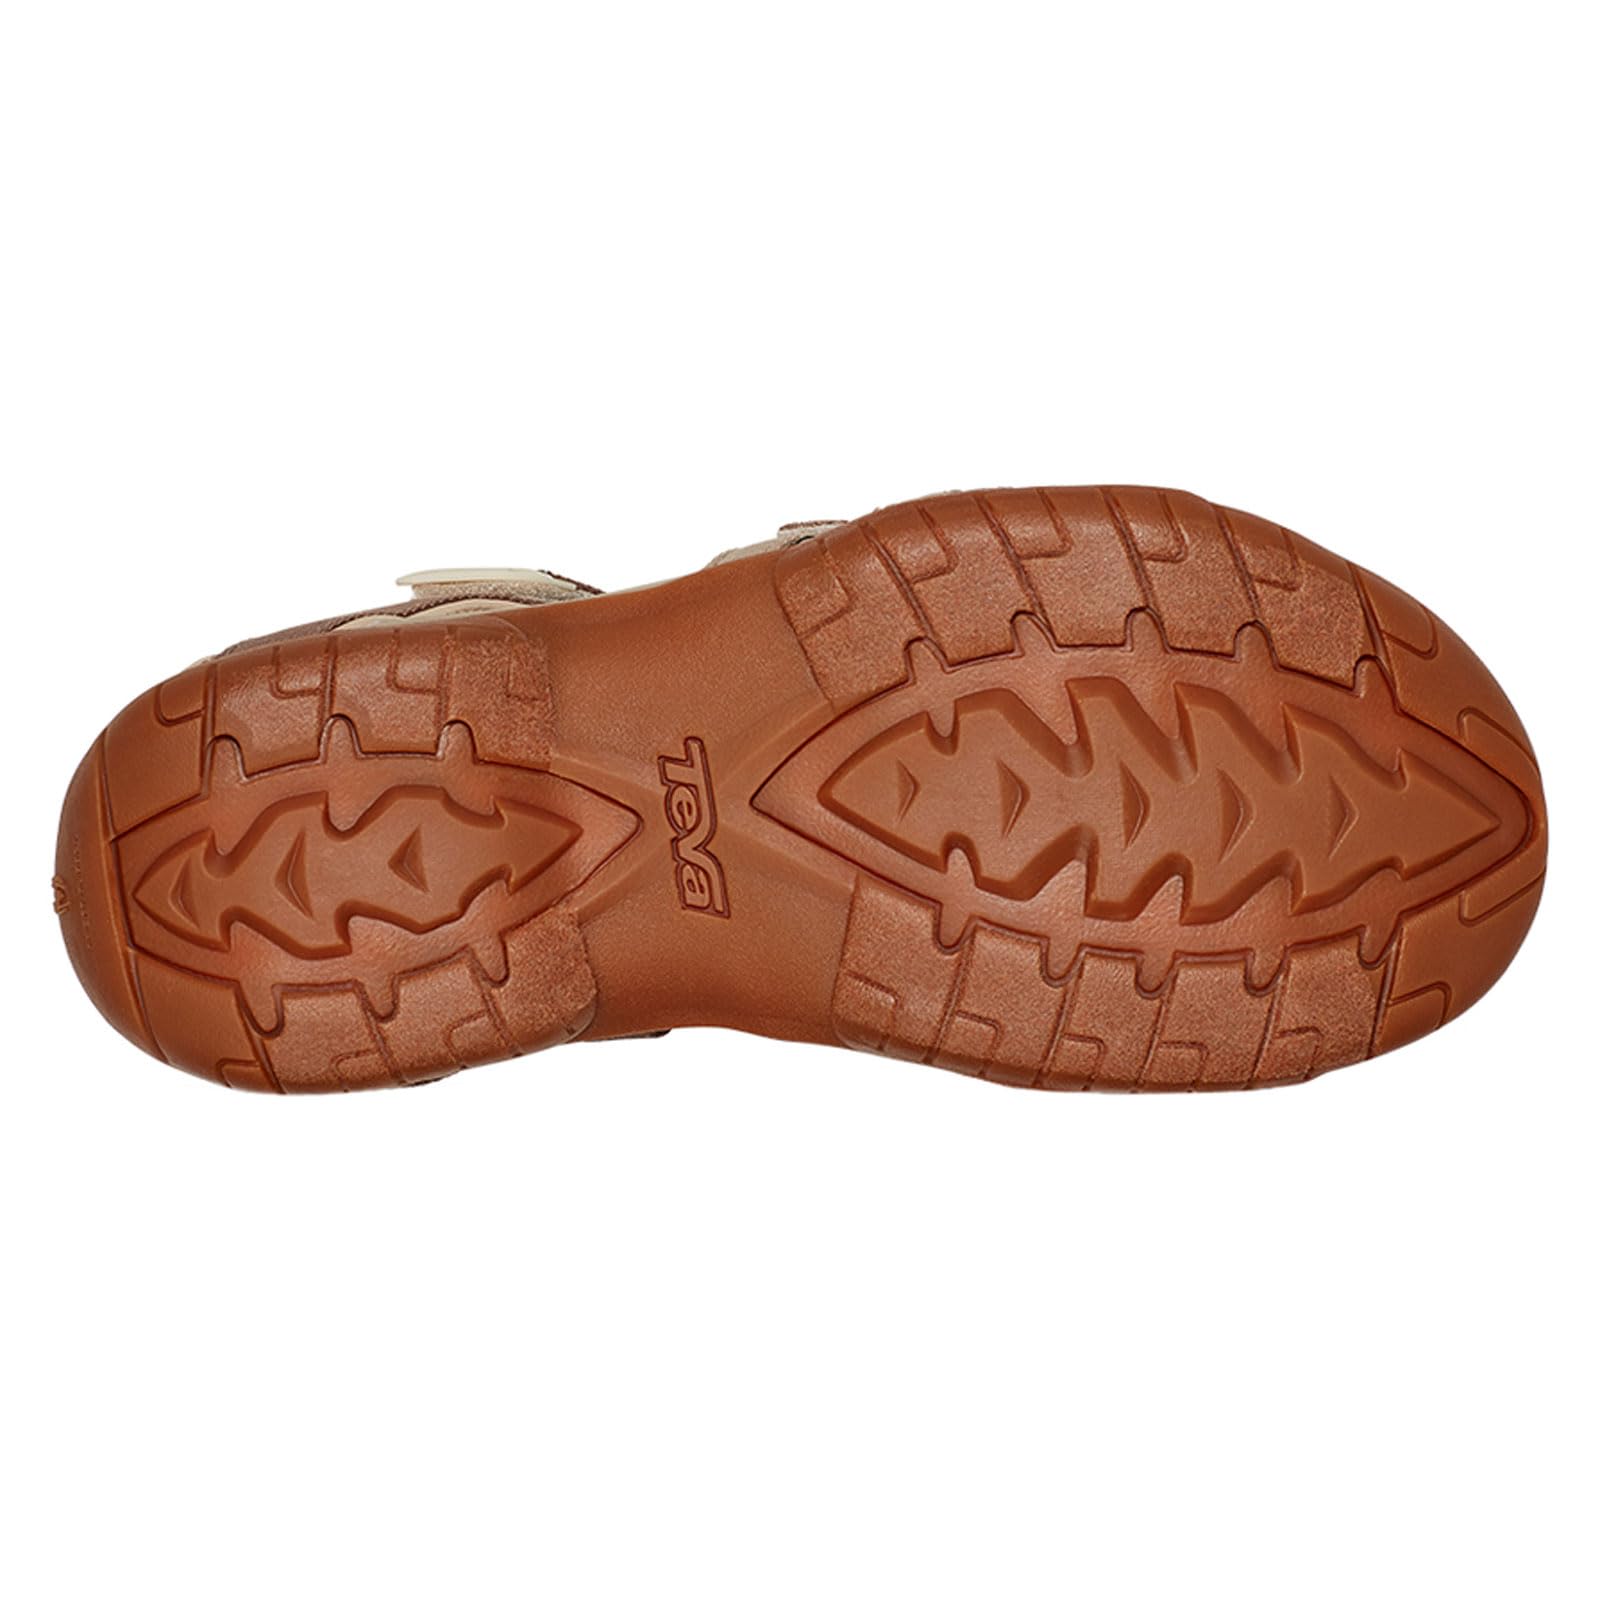 Teva Women's Tirra Sandal, Neutral Multi, 5